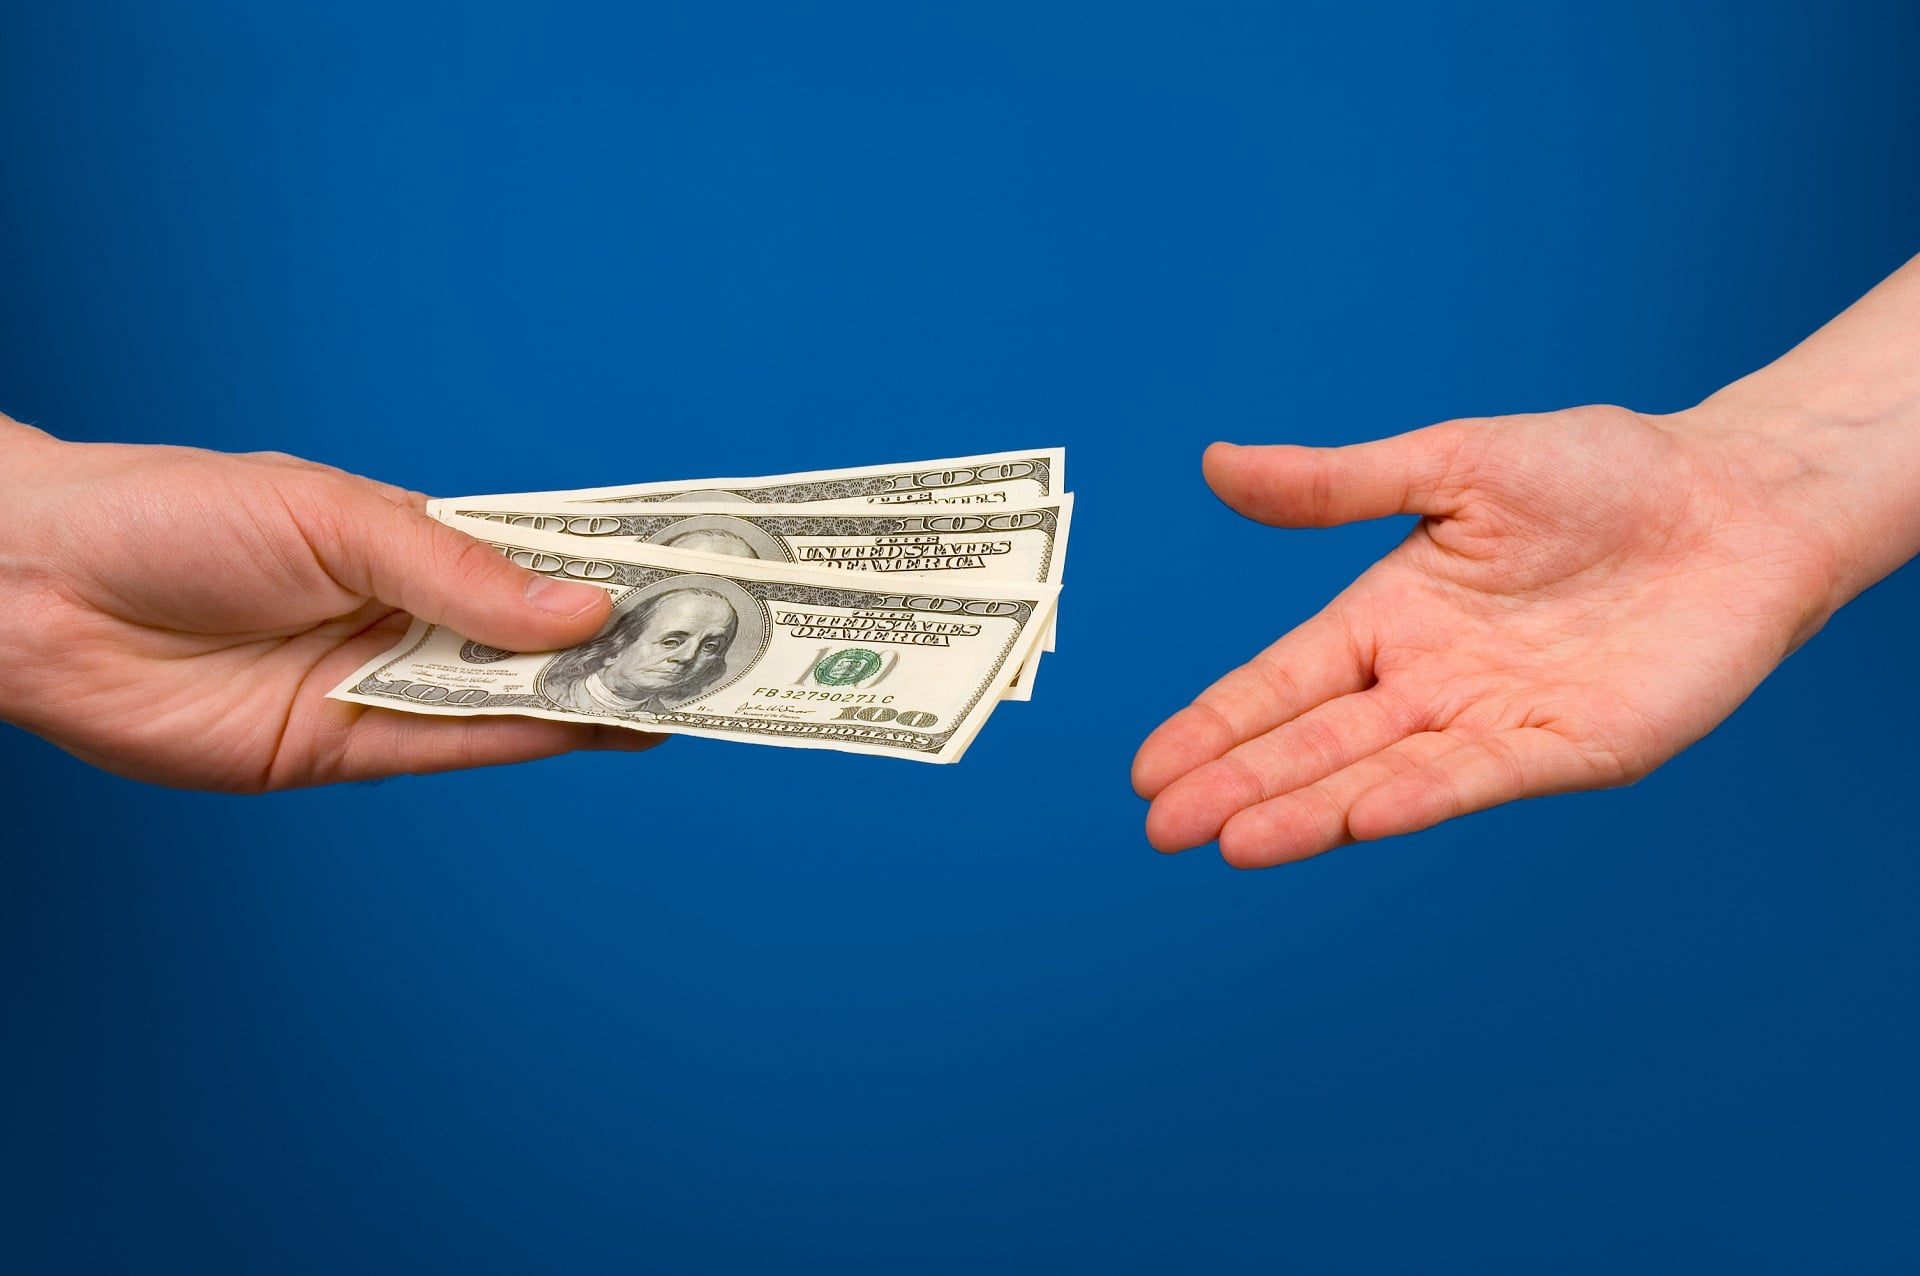 7 قانون کلی برای قرض دادن پول به اعضای خانواده و نزدیکان چیست؟